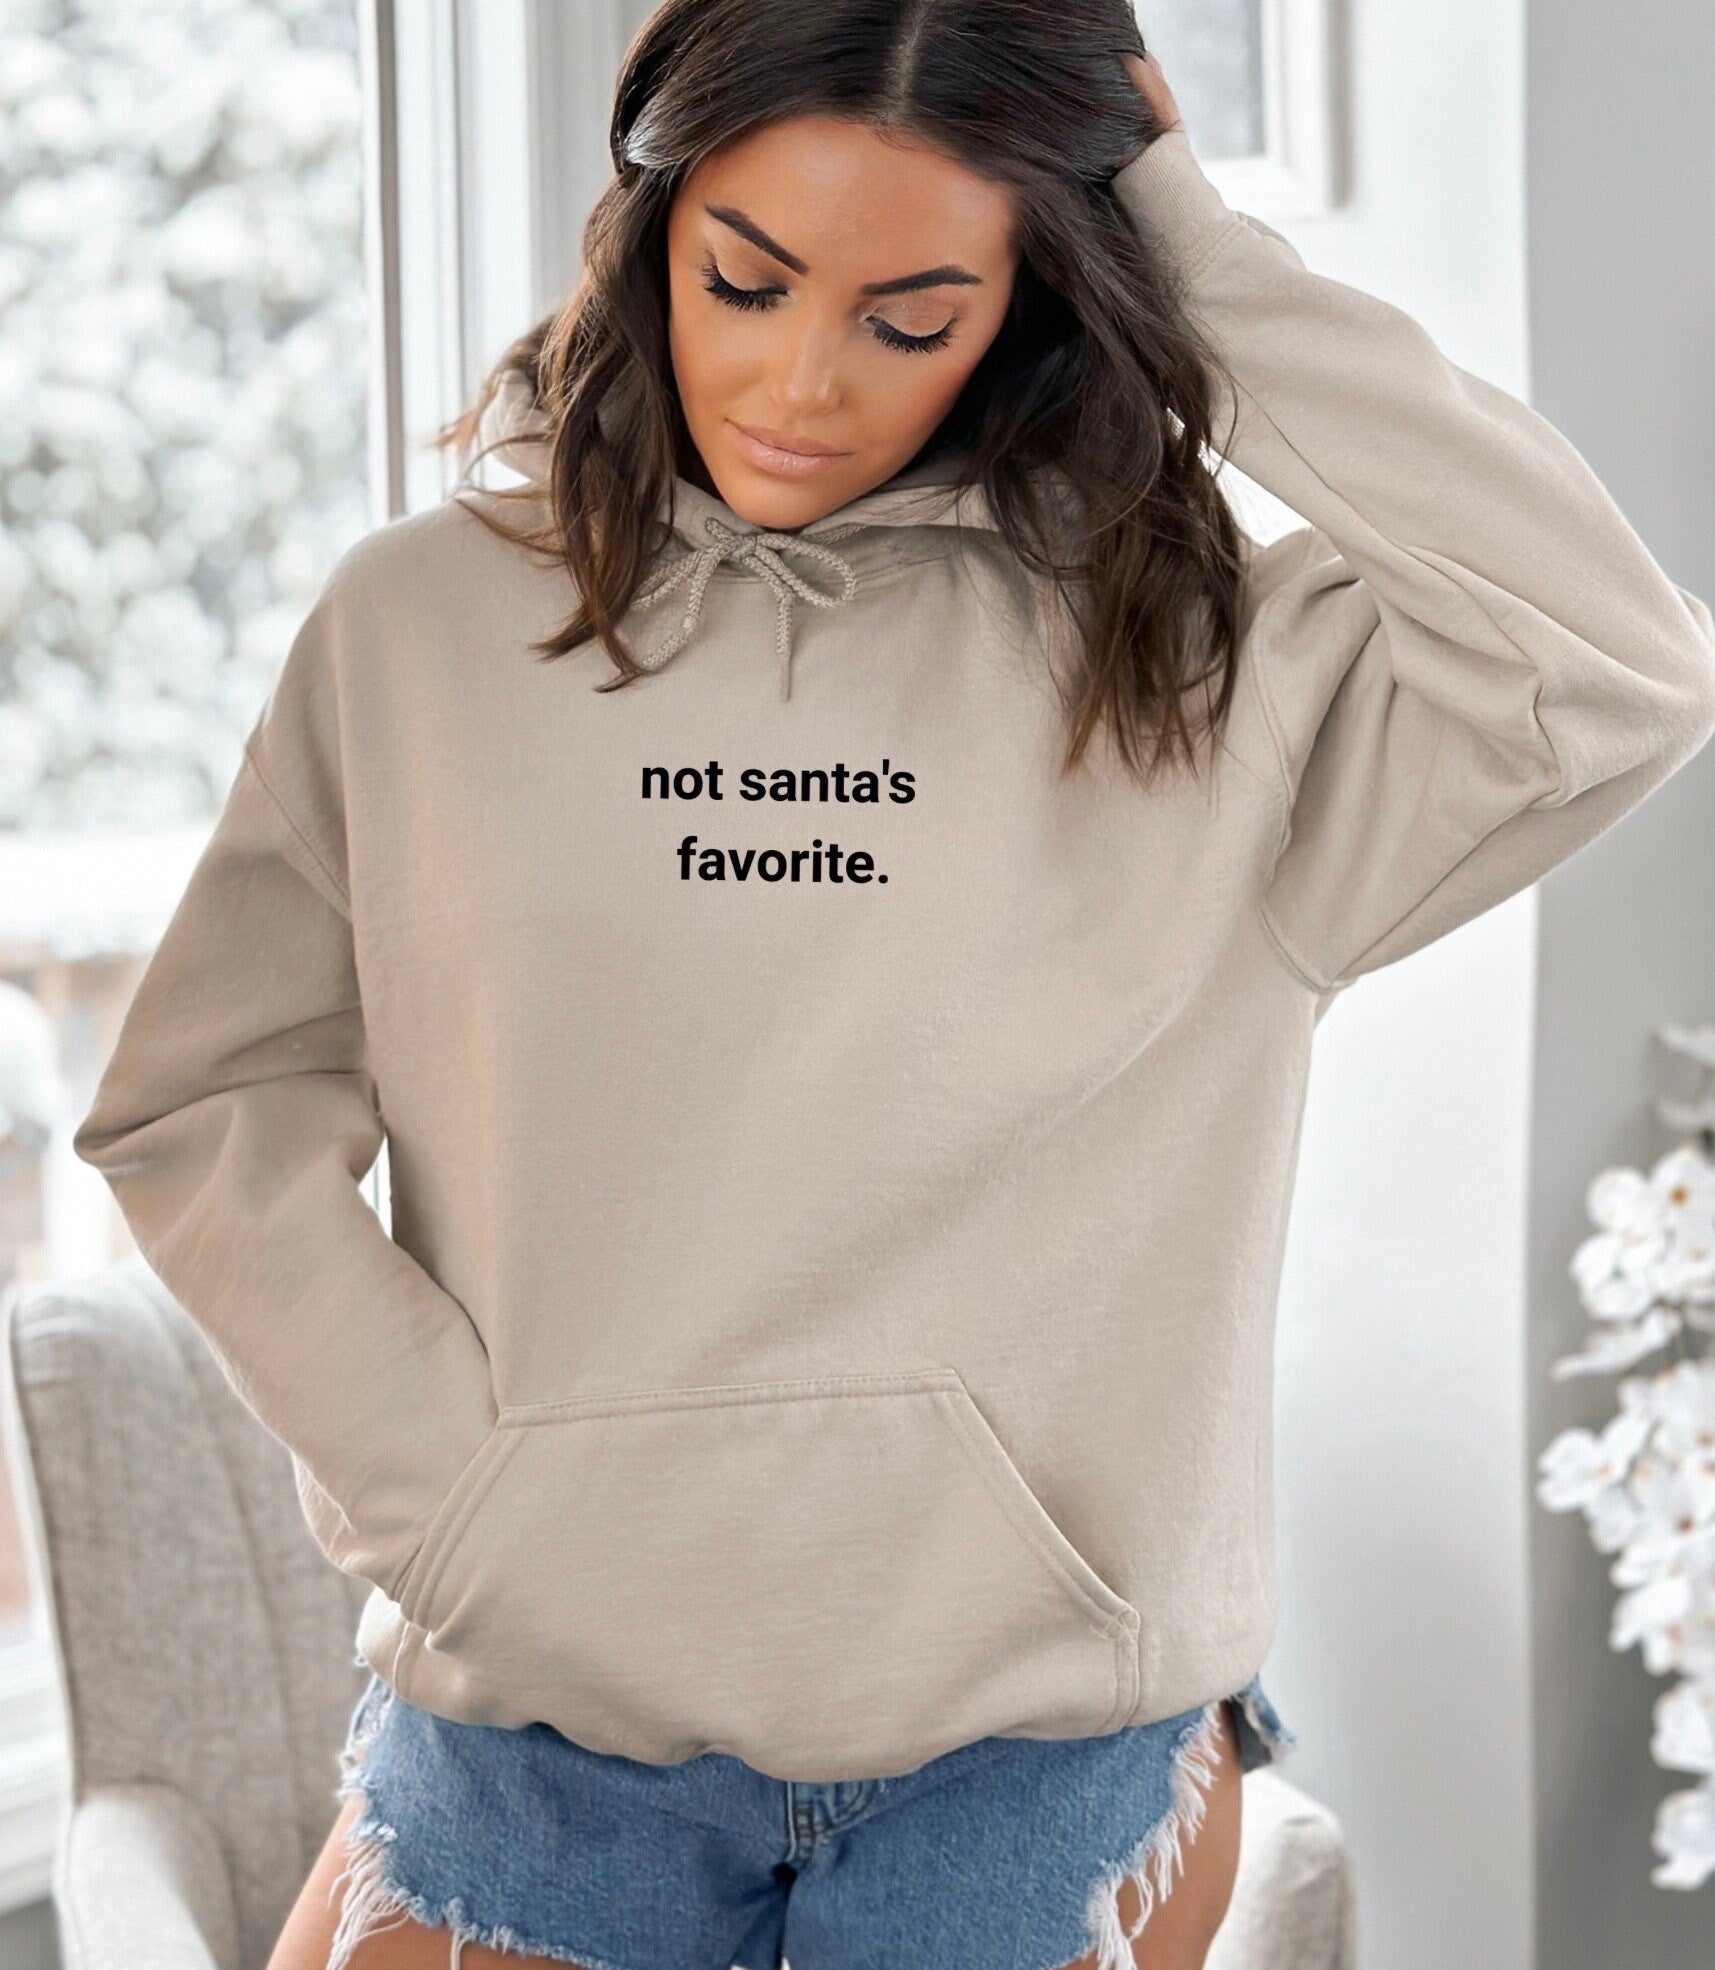 Not Santas Favorite Sweatshirt, Not Santas Favorite Shirt, Not Santas Favorite Crewneck, Not Santas Favorite Sweater, Oversized Sweater